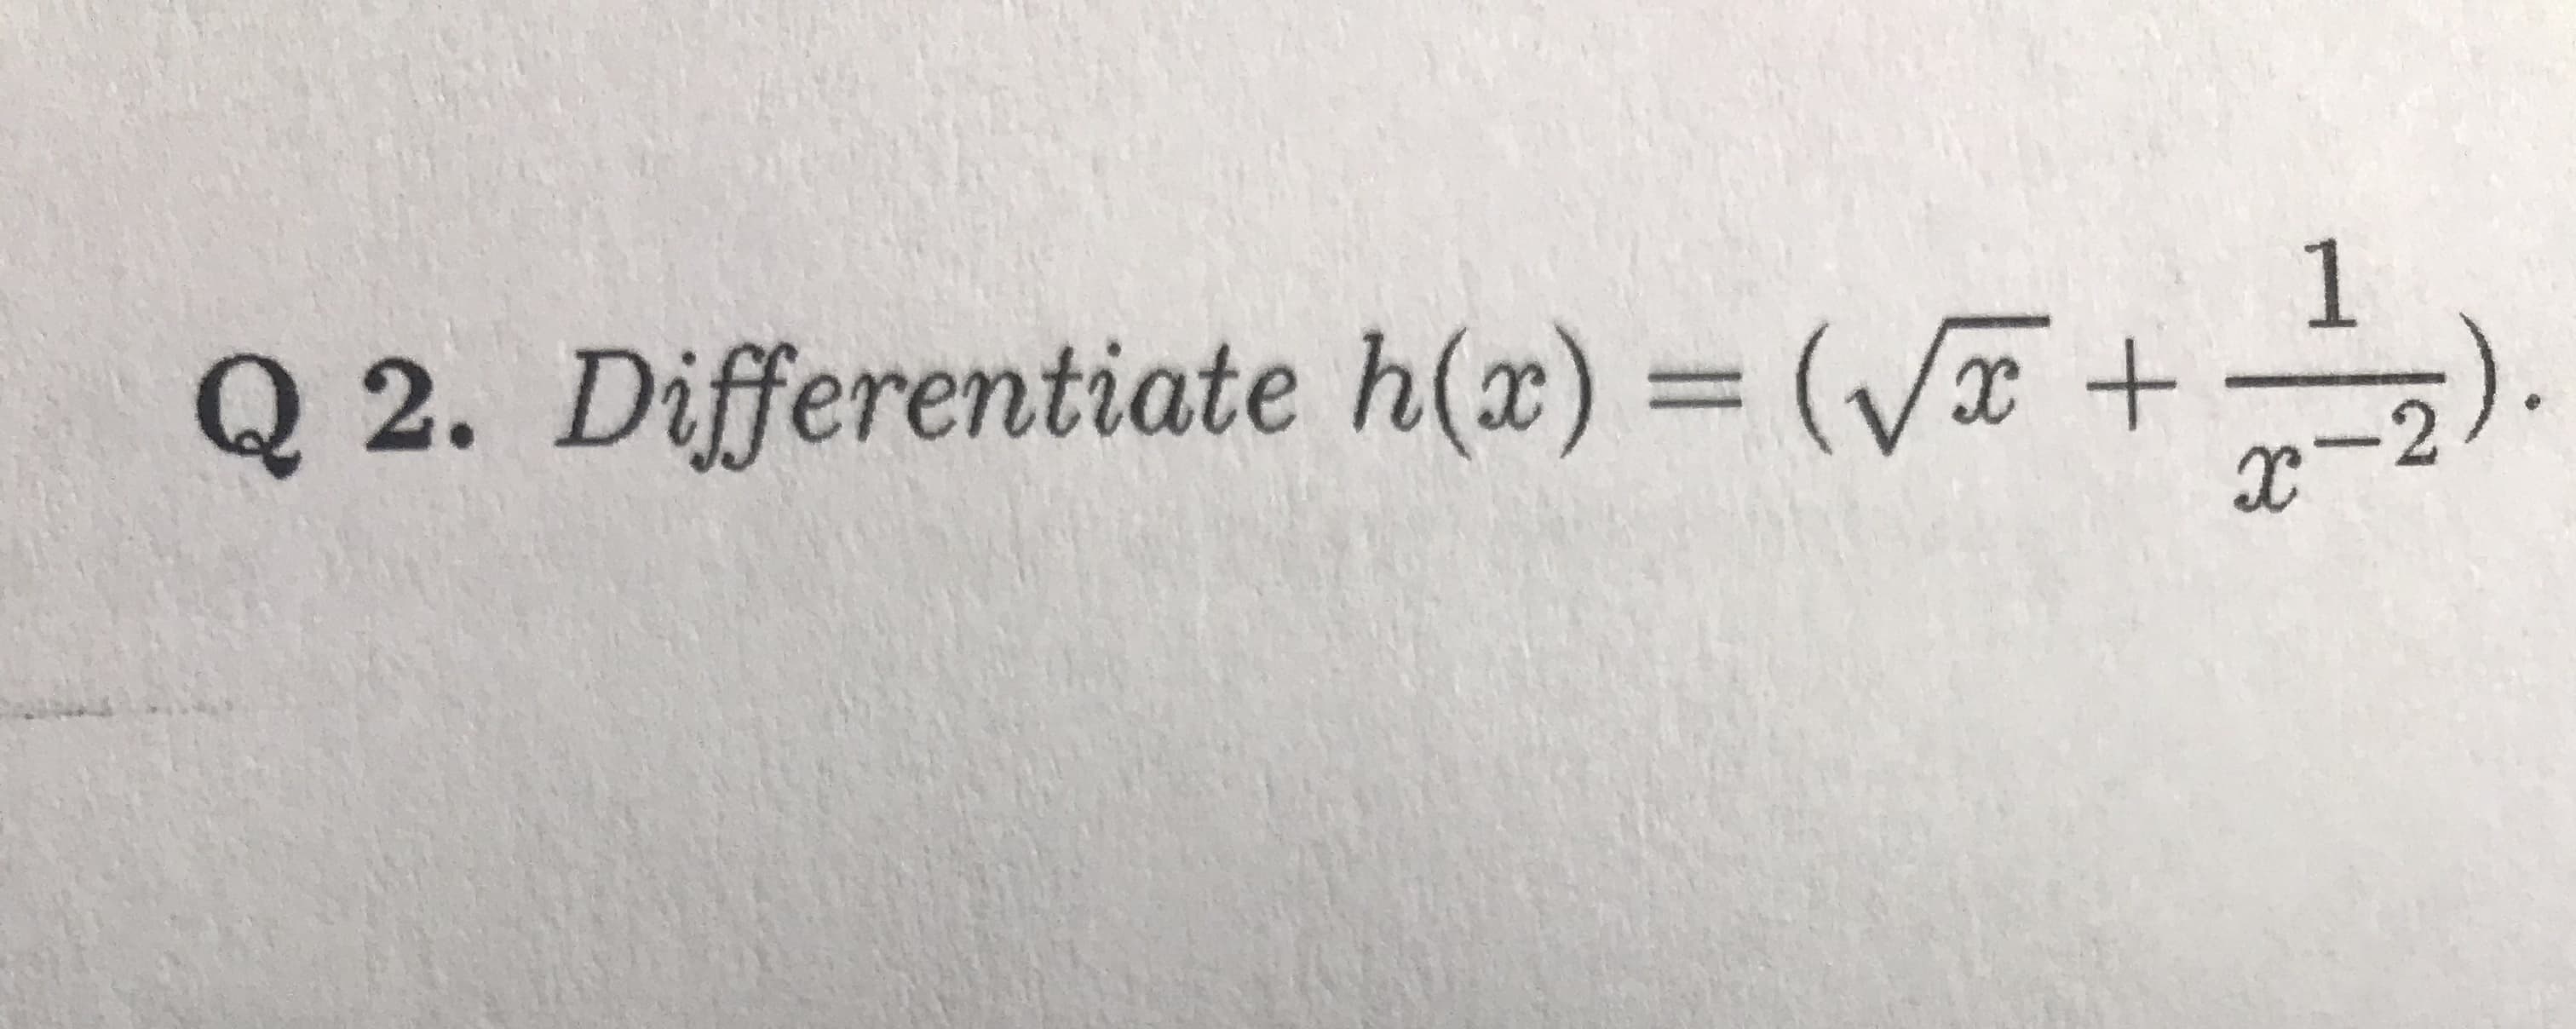 1
Q 2. Differentiate h(x) = (V+
-2
IX
